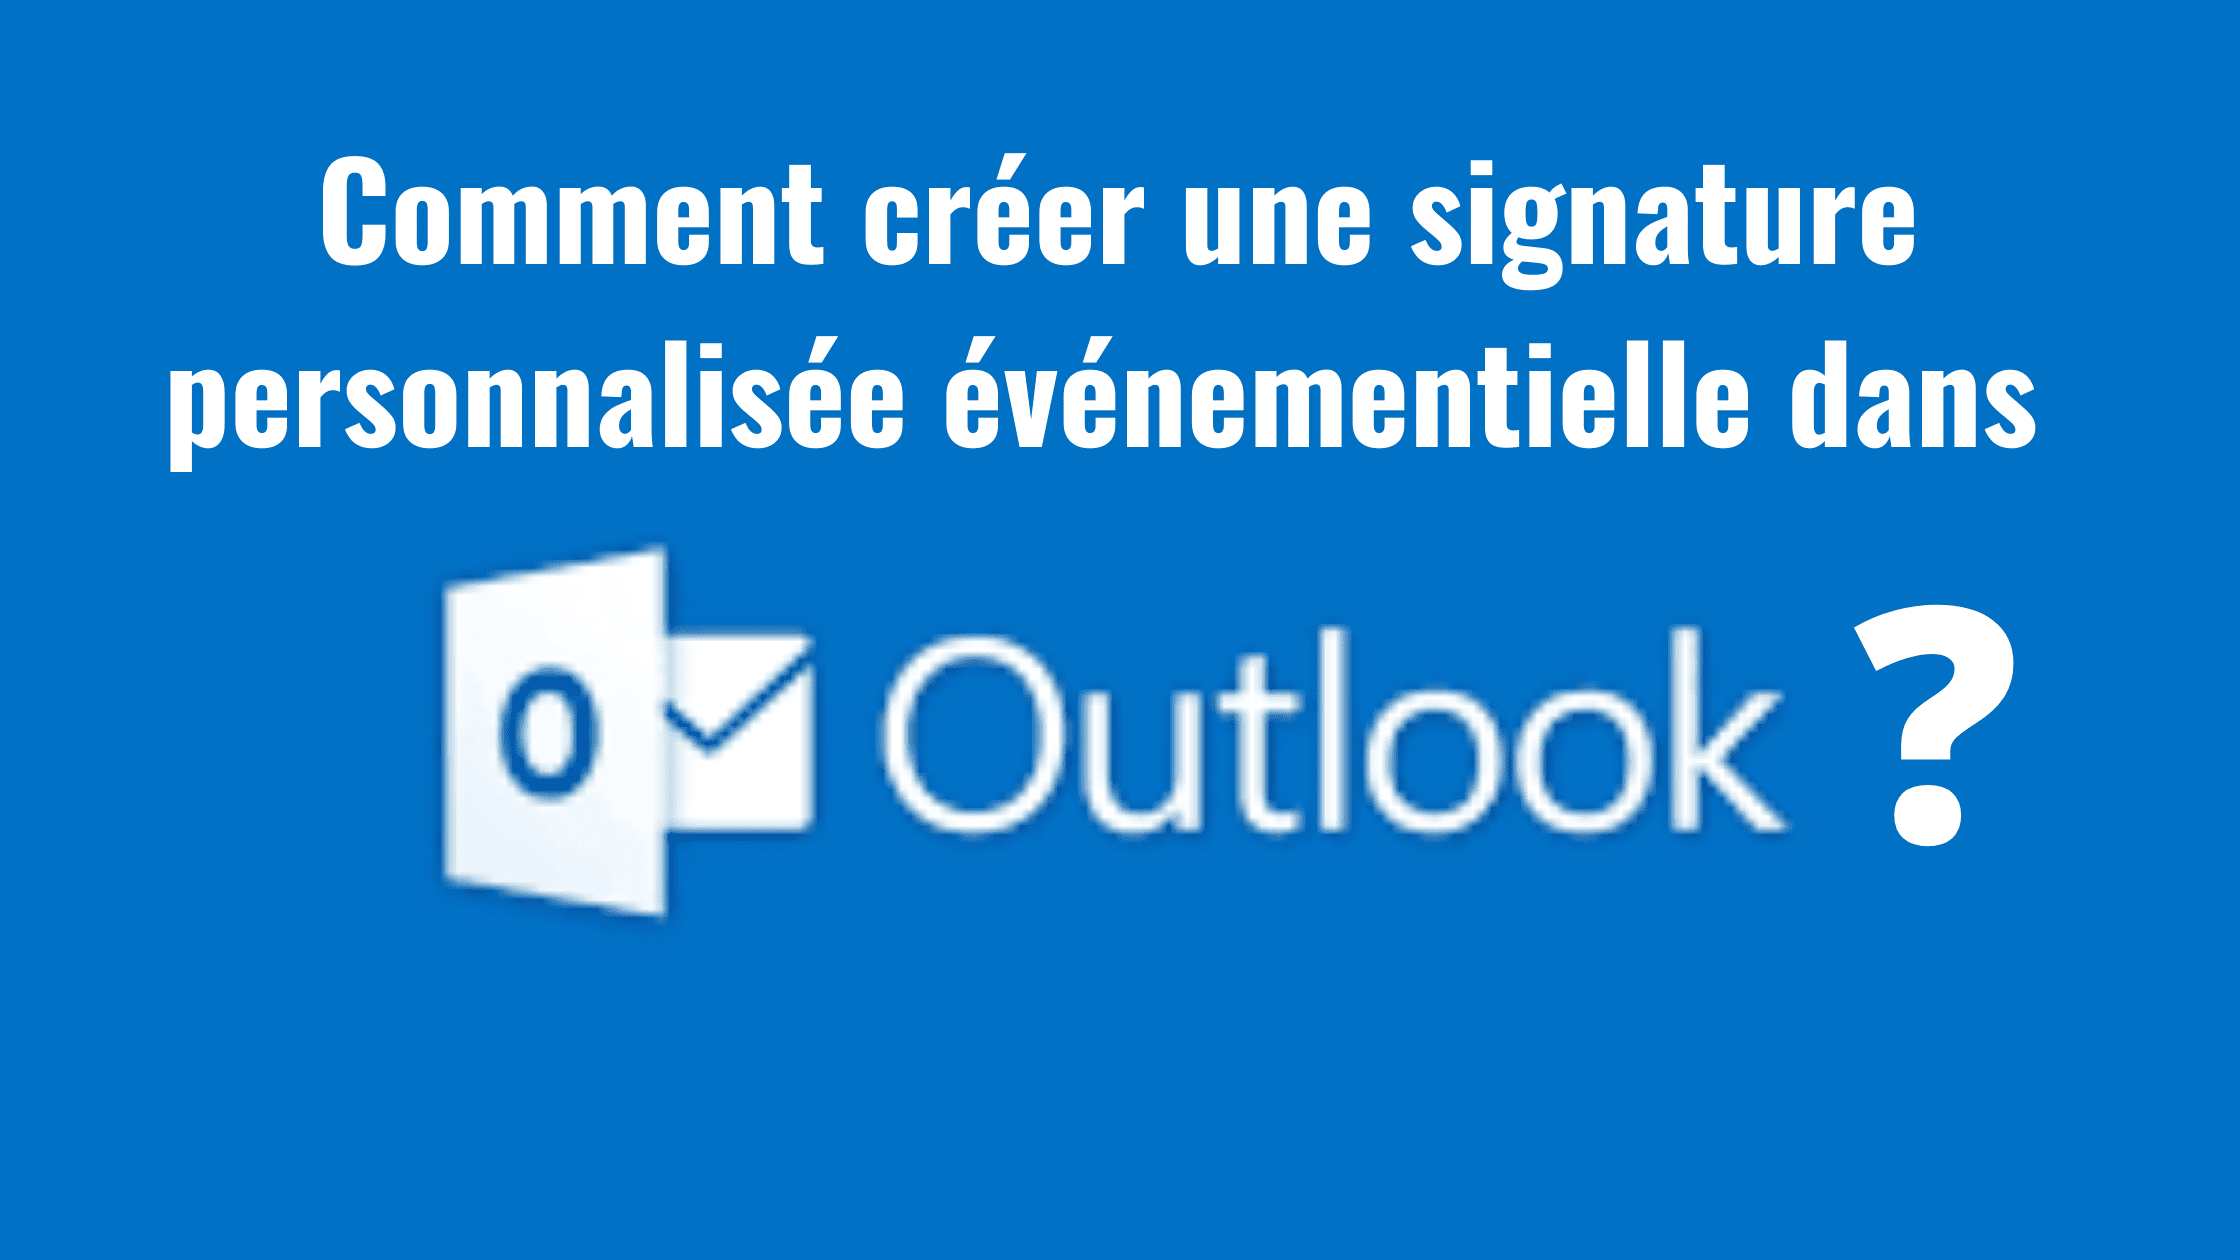 Comment créer une signature personnalisée événementielle dans Outlook ? 4